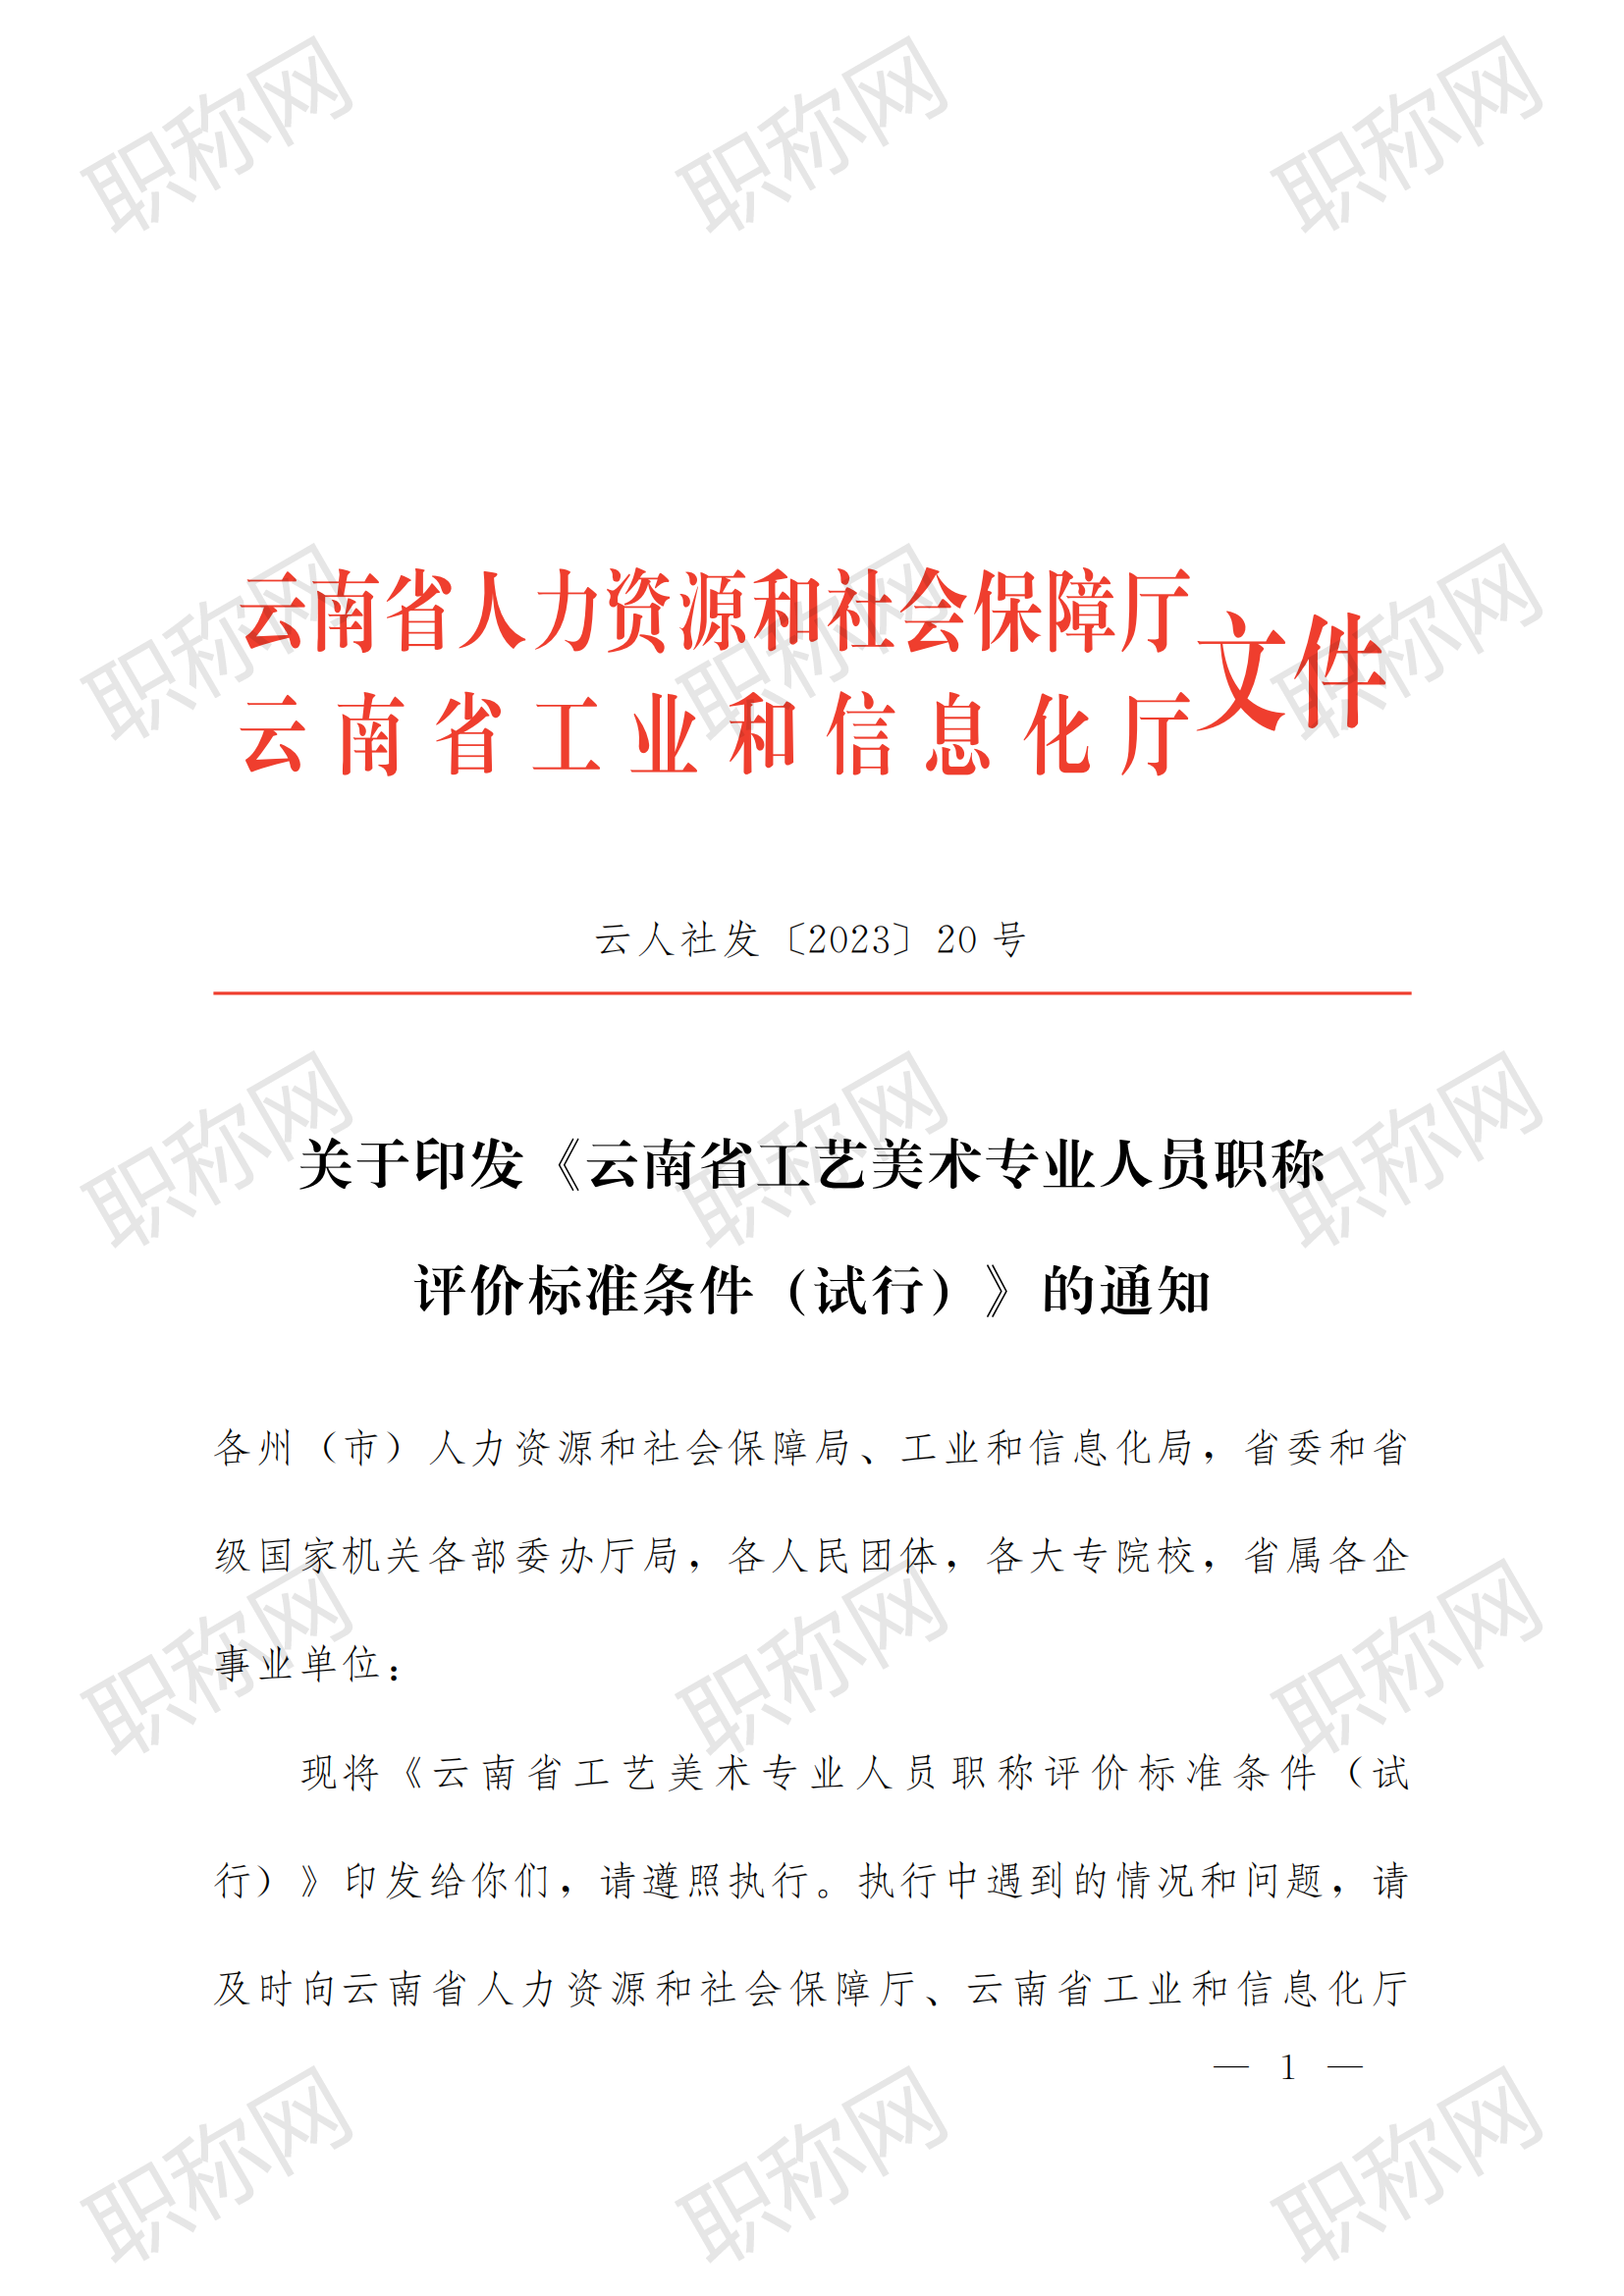 关于印发云南省工艺美术专业人员职称评价标准条件 (试行)  的通知_00.png